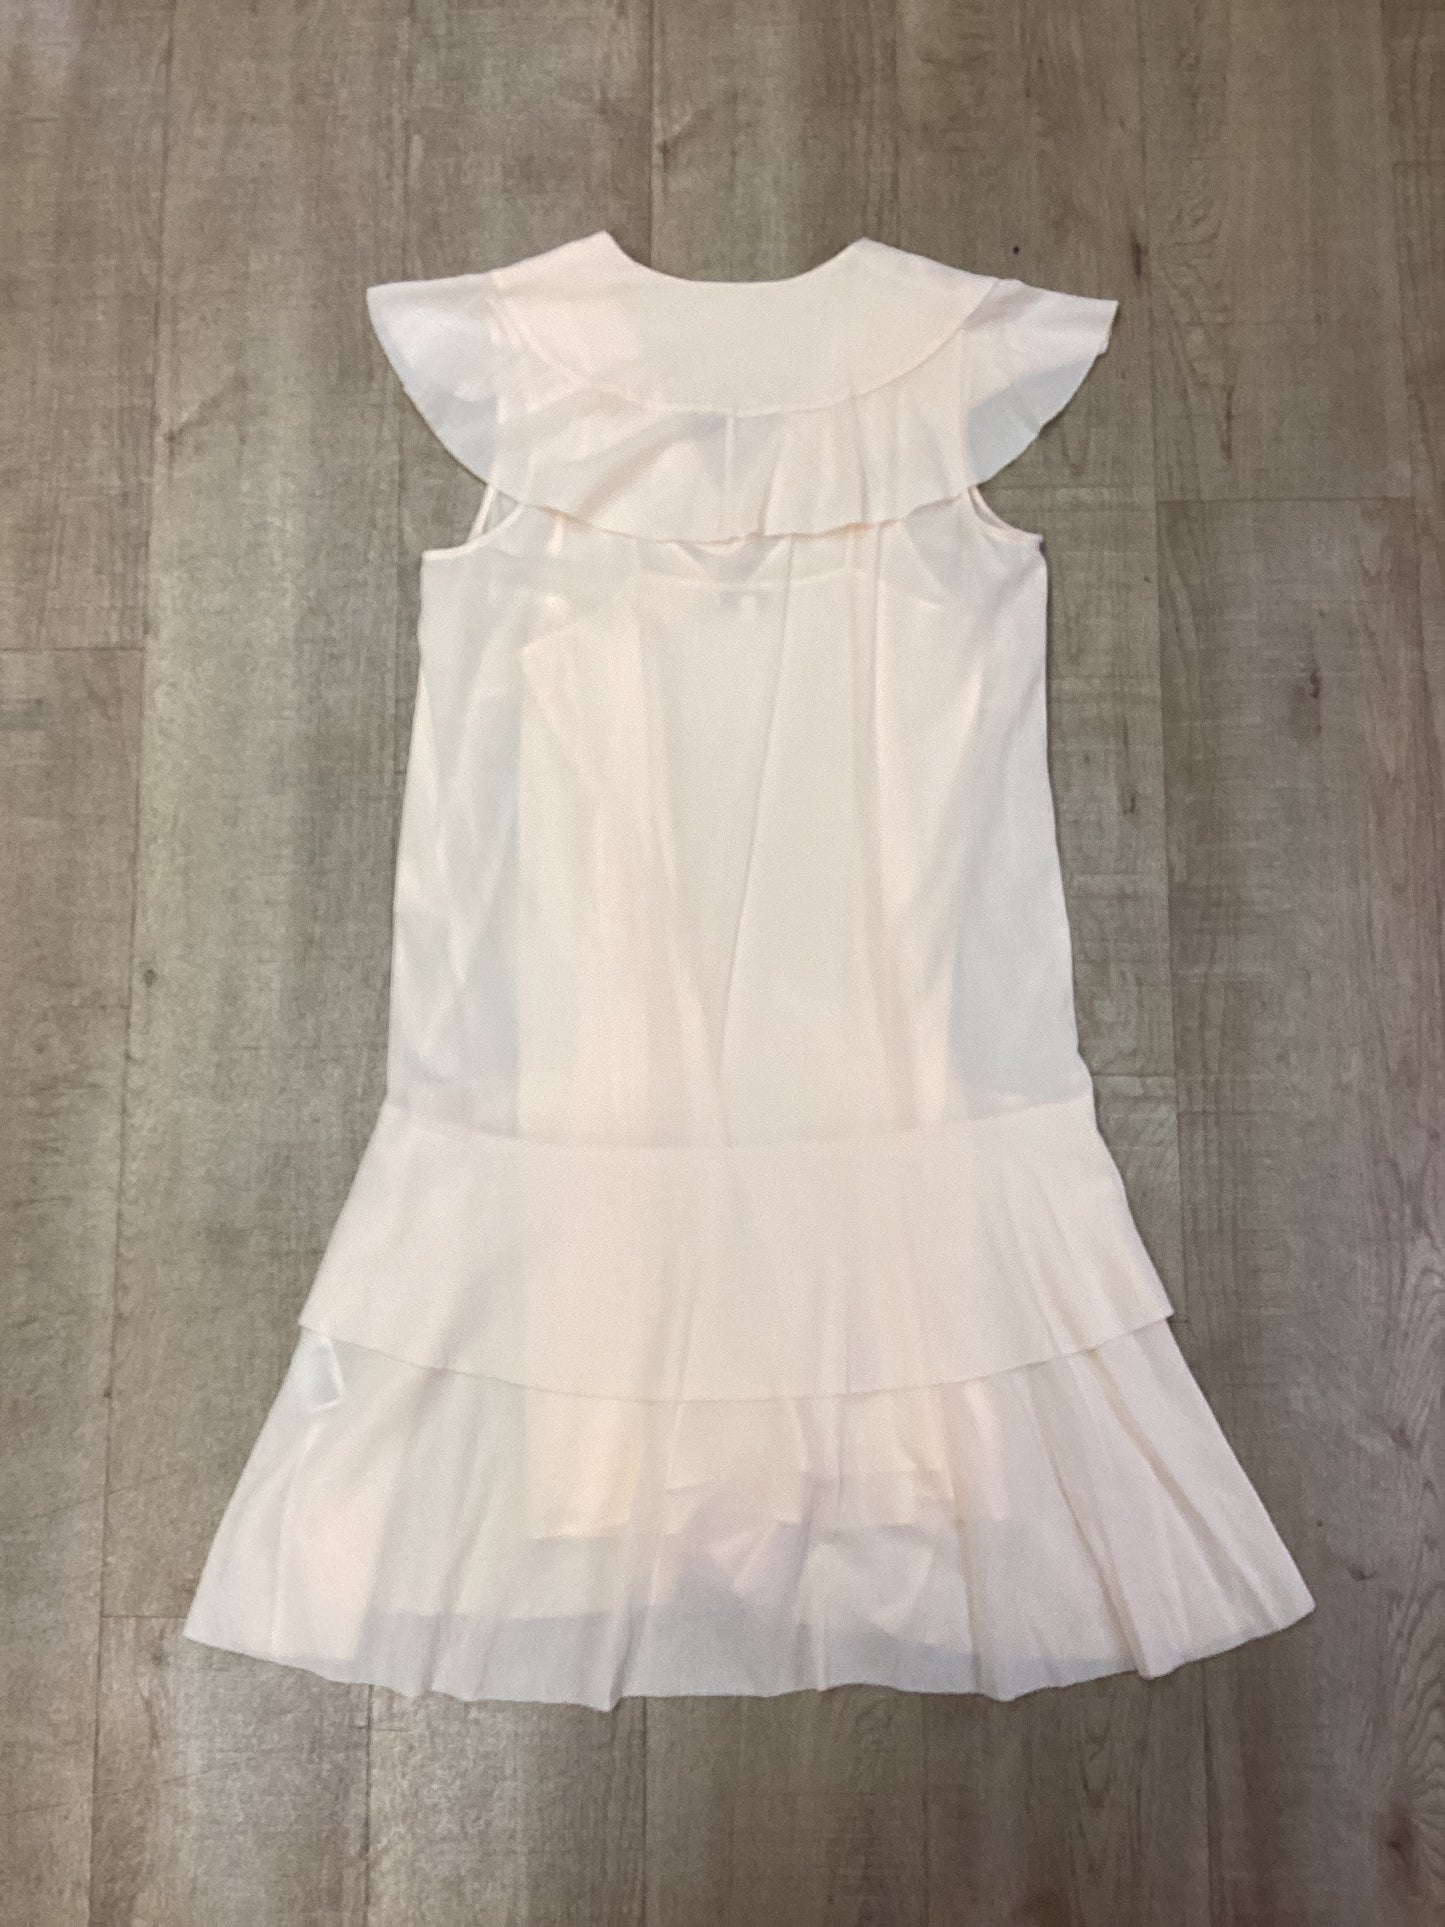 & Other Stories Light Peach  Asymmetrical Summer Dress Size 12